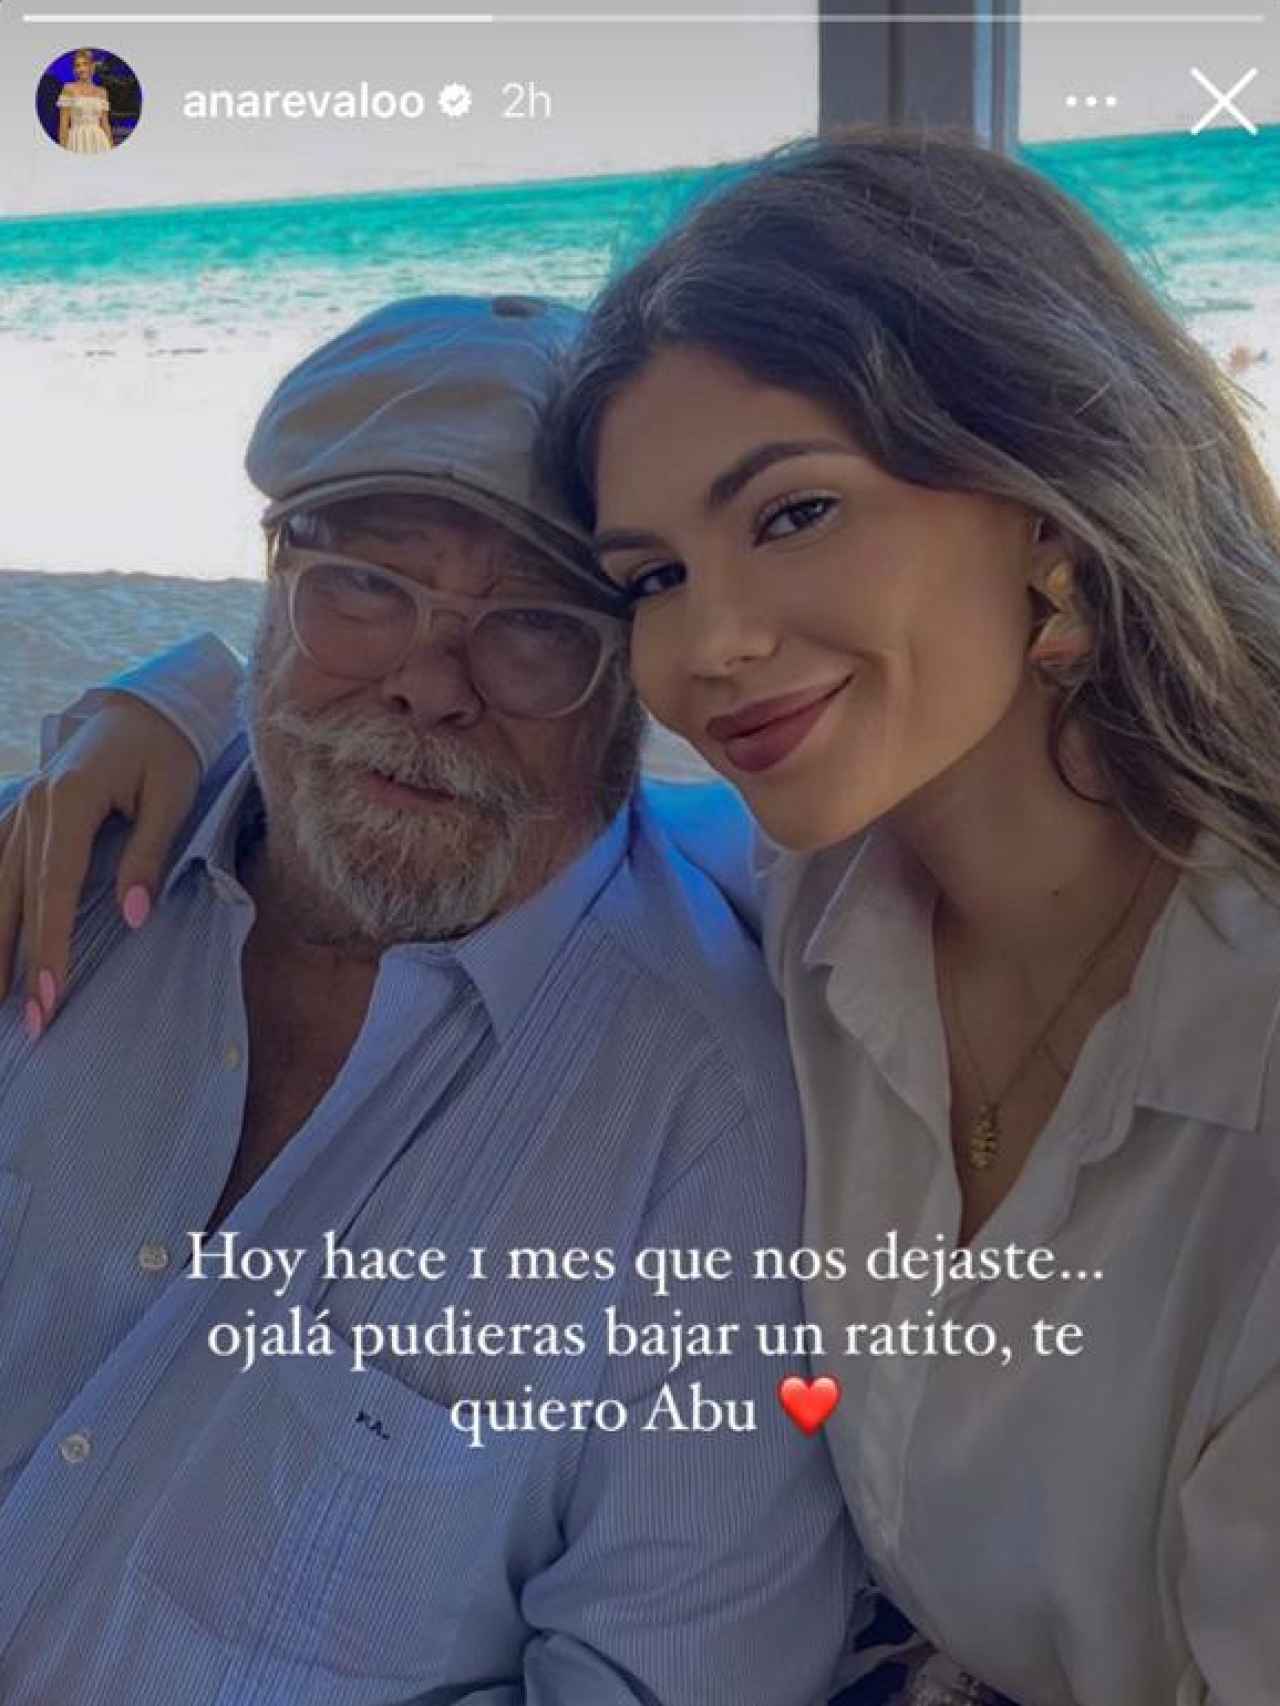 El emotivo mensaje que le ha dedicado Ana a su abuelo.